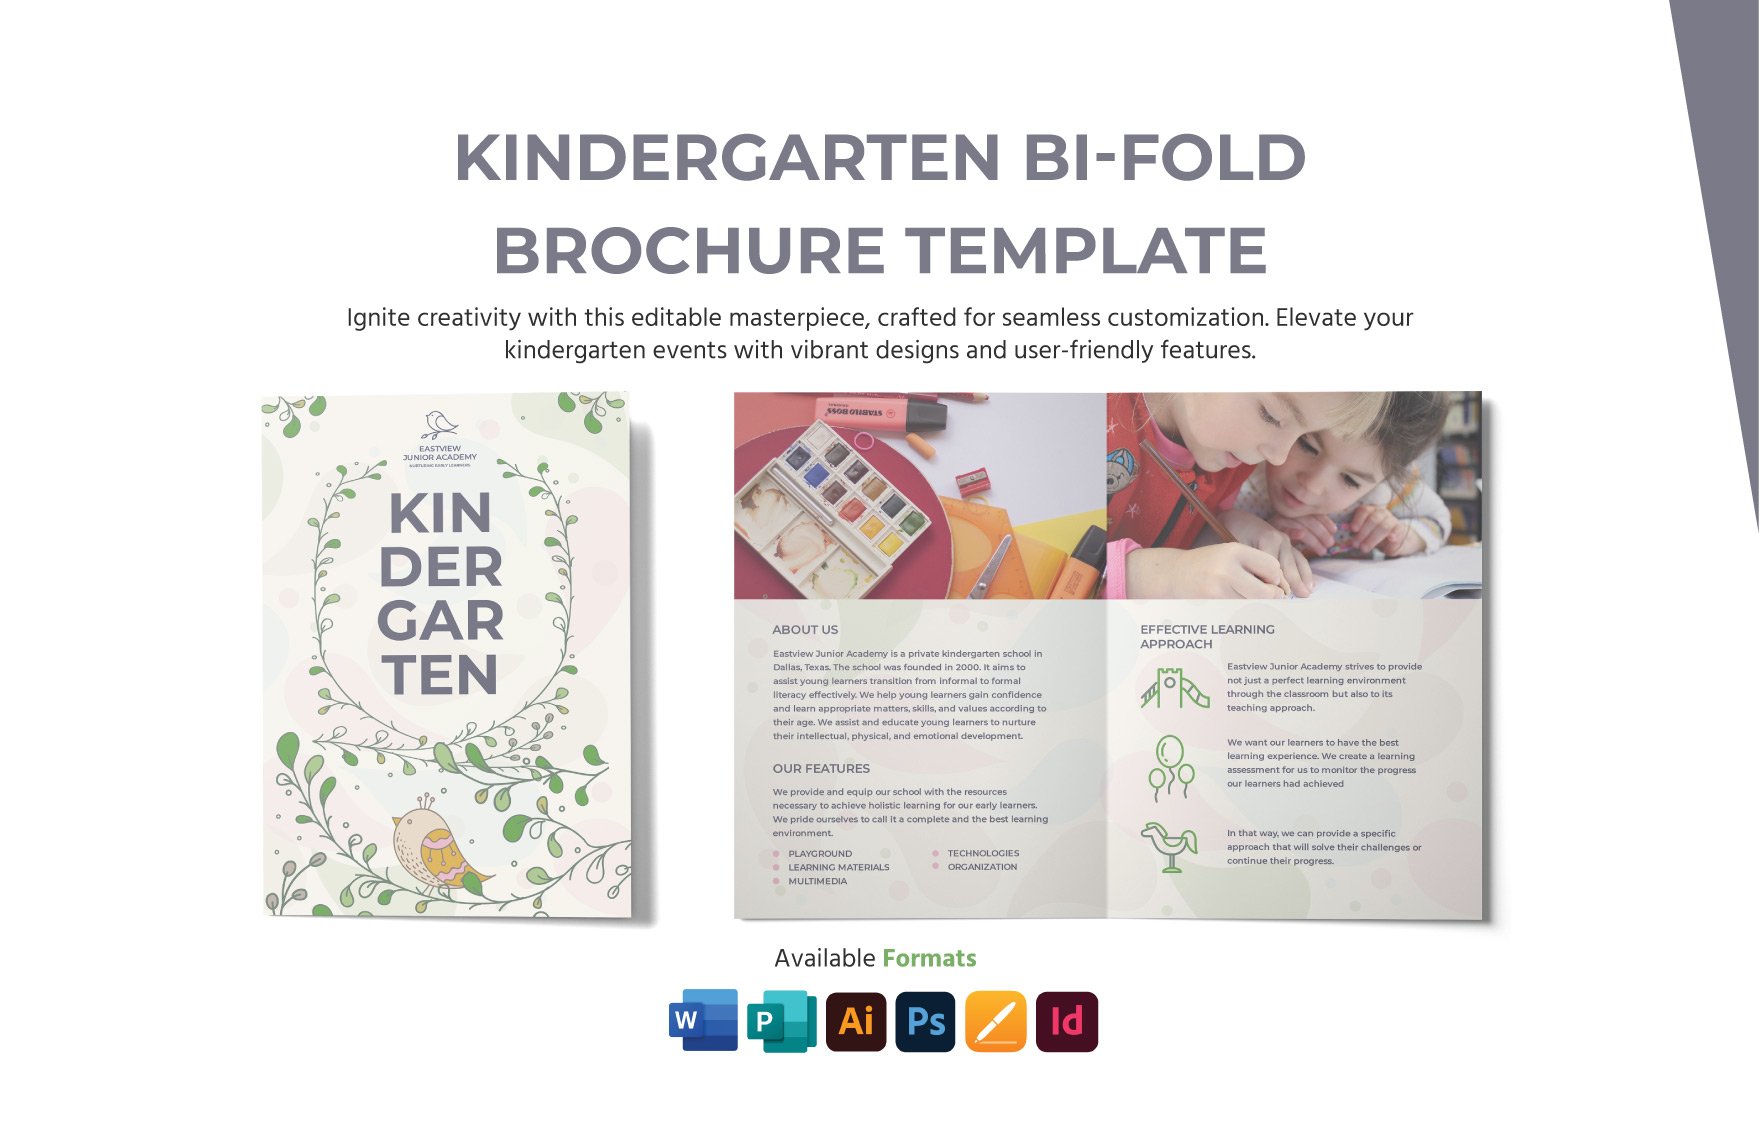 Kindergarten Bi- Fold Brochure Template in Word, Illustrator, PSD, Apple Pages, Publisher, InDesign